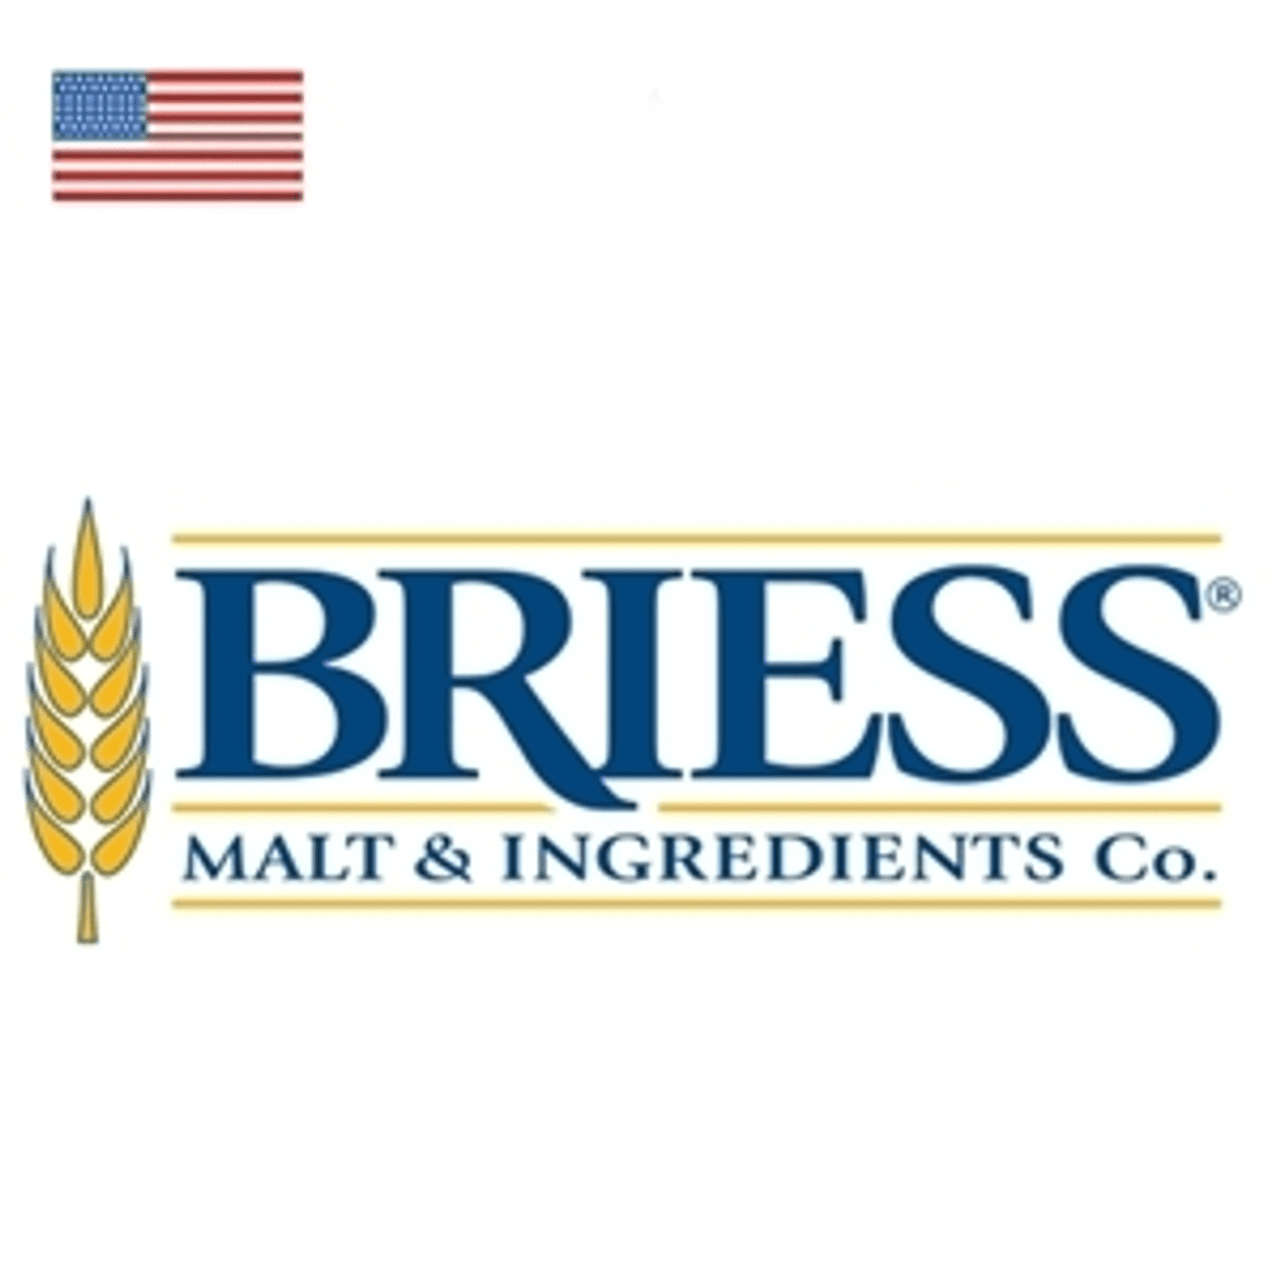 Breiss (American) Beer Grains